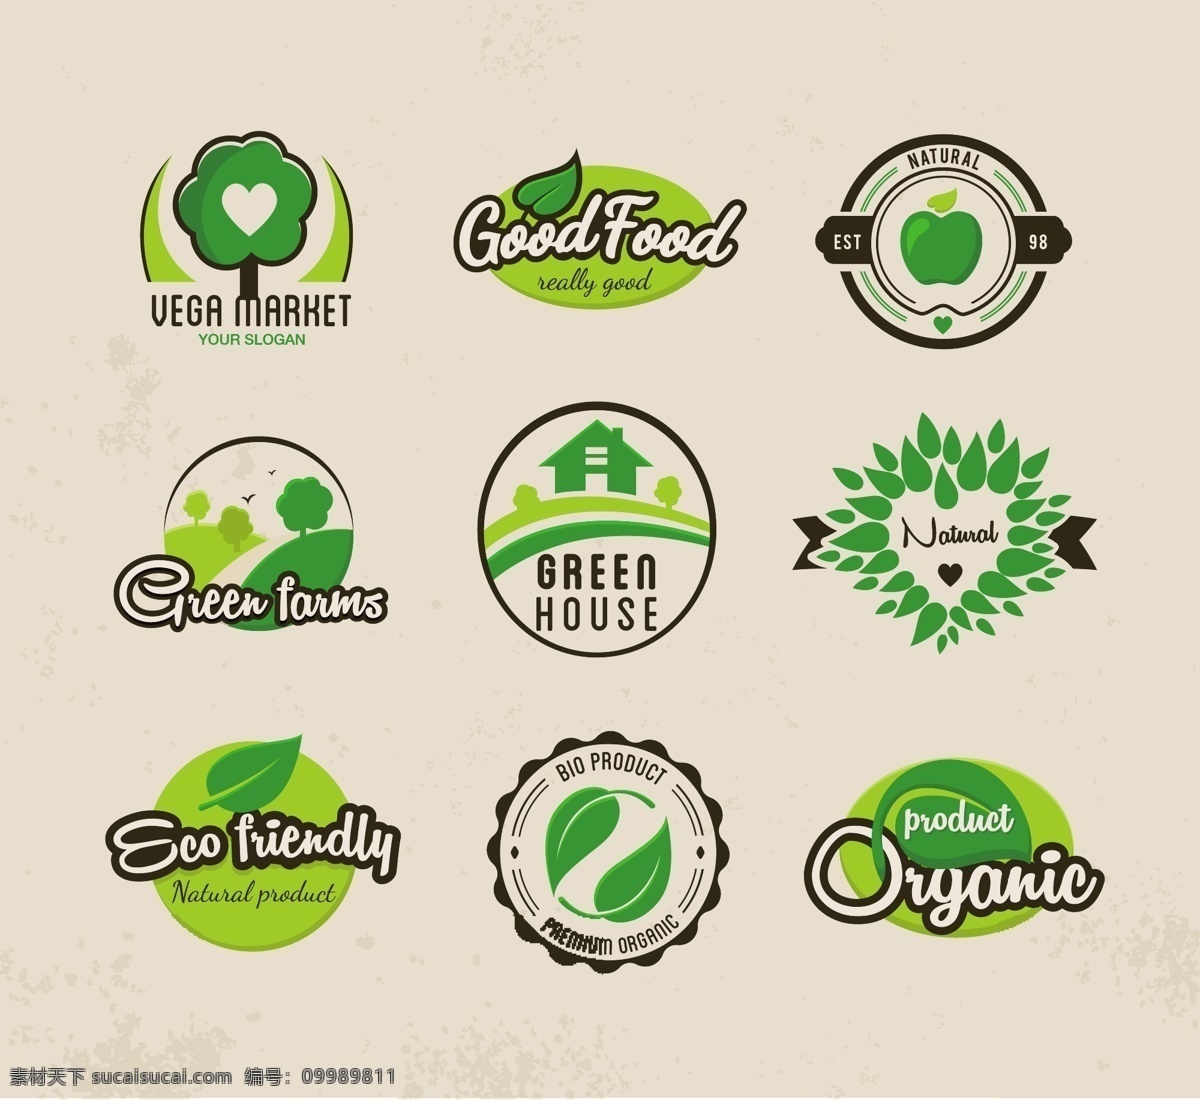 绿色环保标签 绿色房子 绿色食品标签 绿色环保 icon 绿叶矢量素材 绿树矢量素材 圆形标贴 花形标贴 矢量图标 标志图标 其他图标